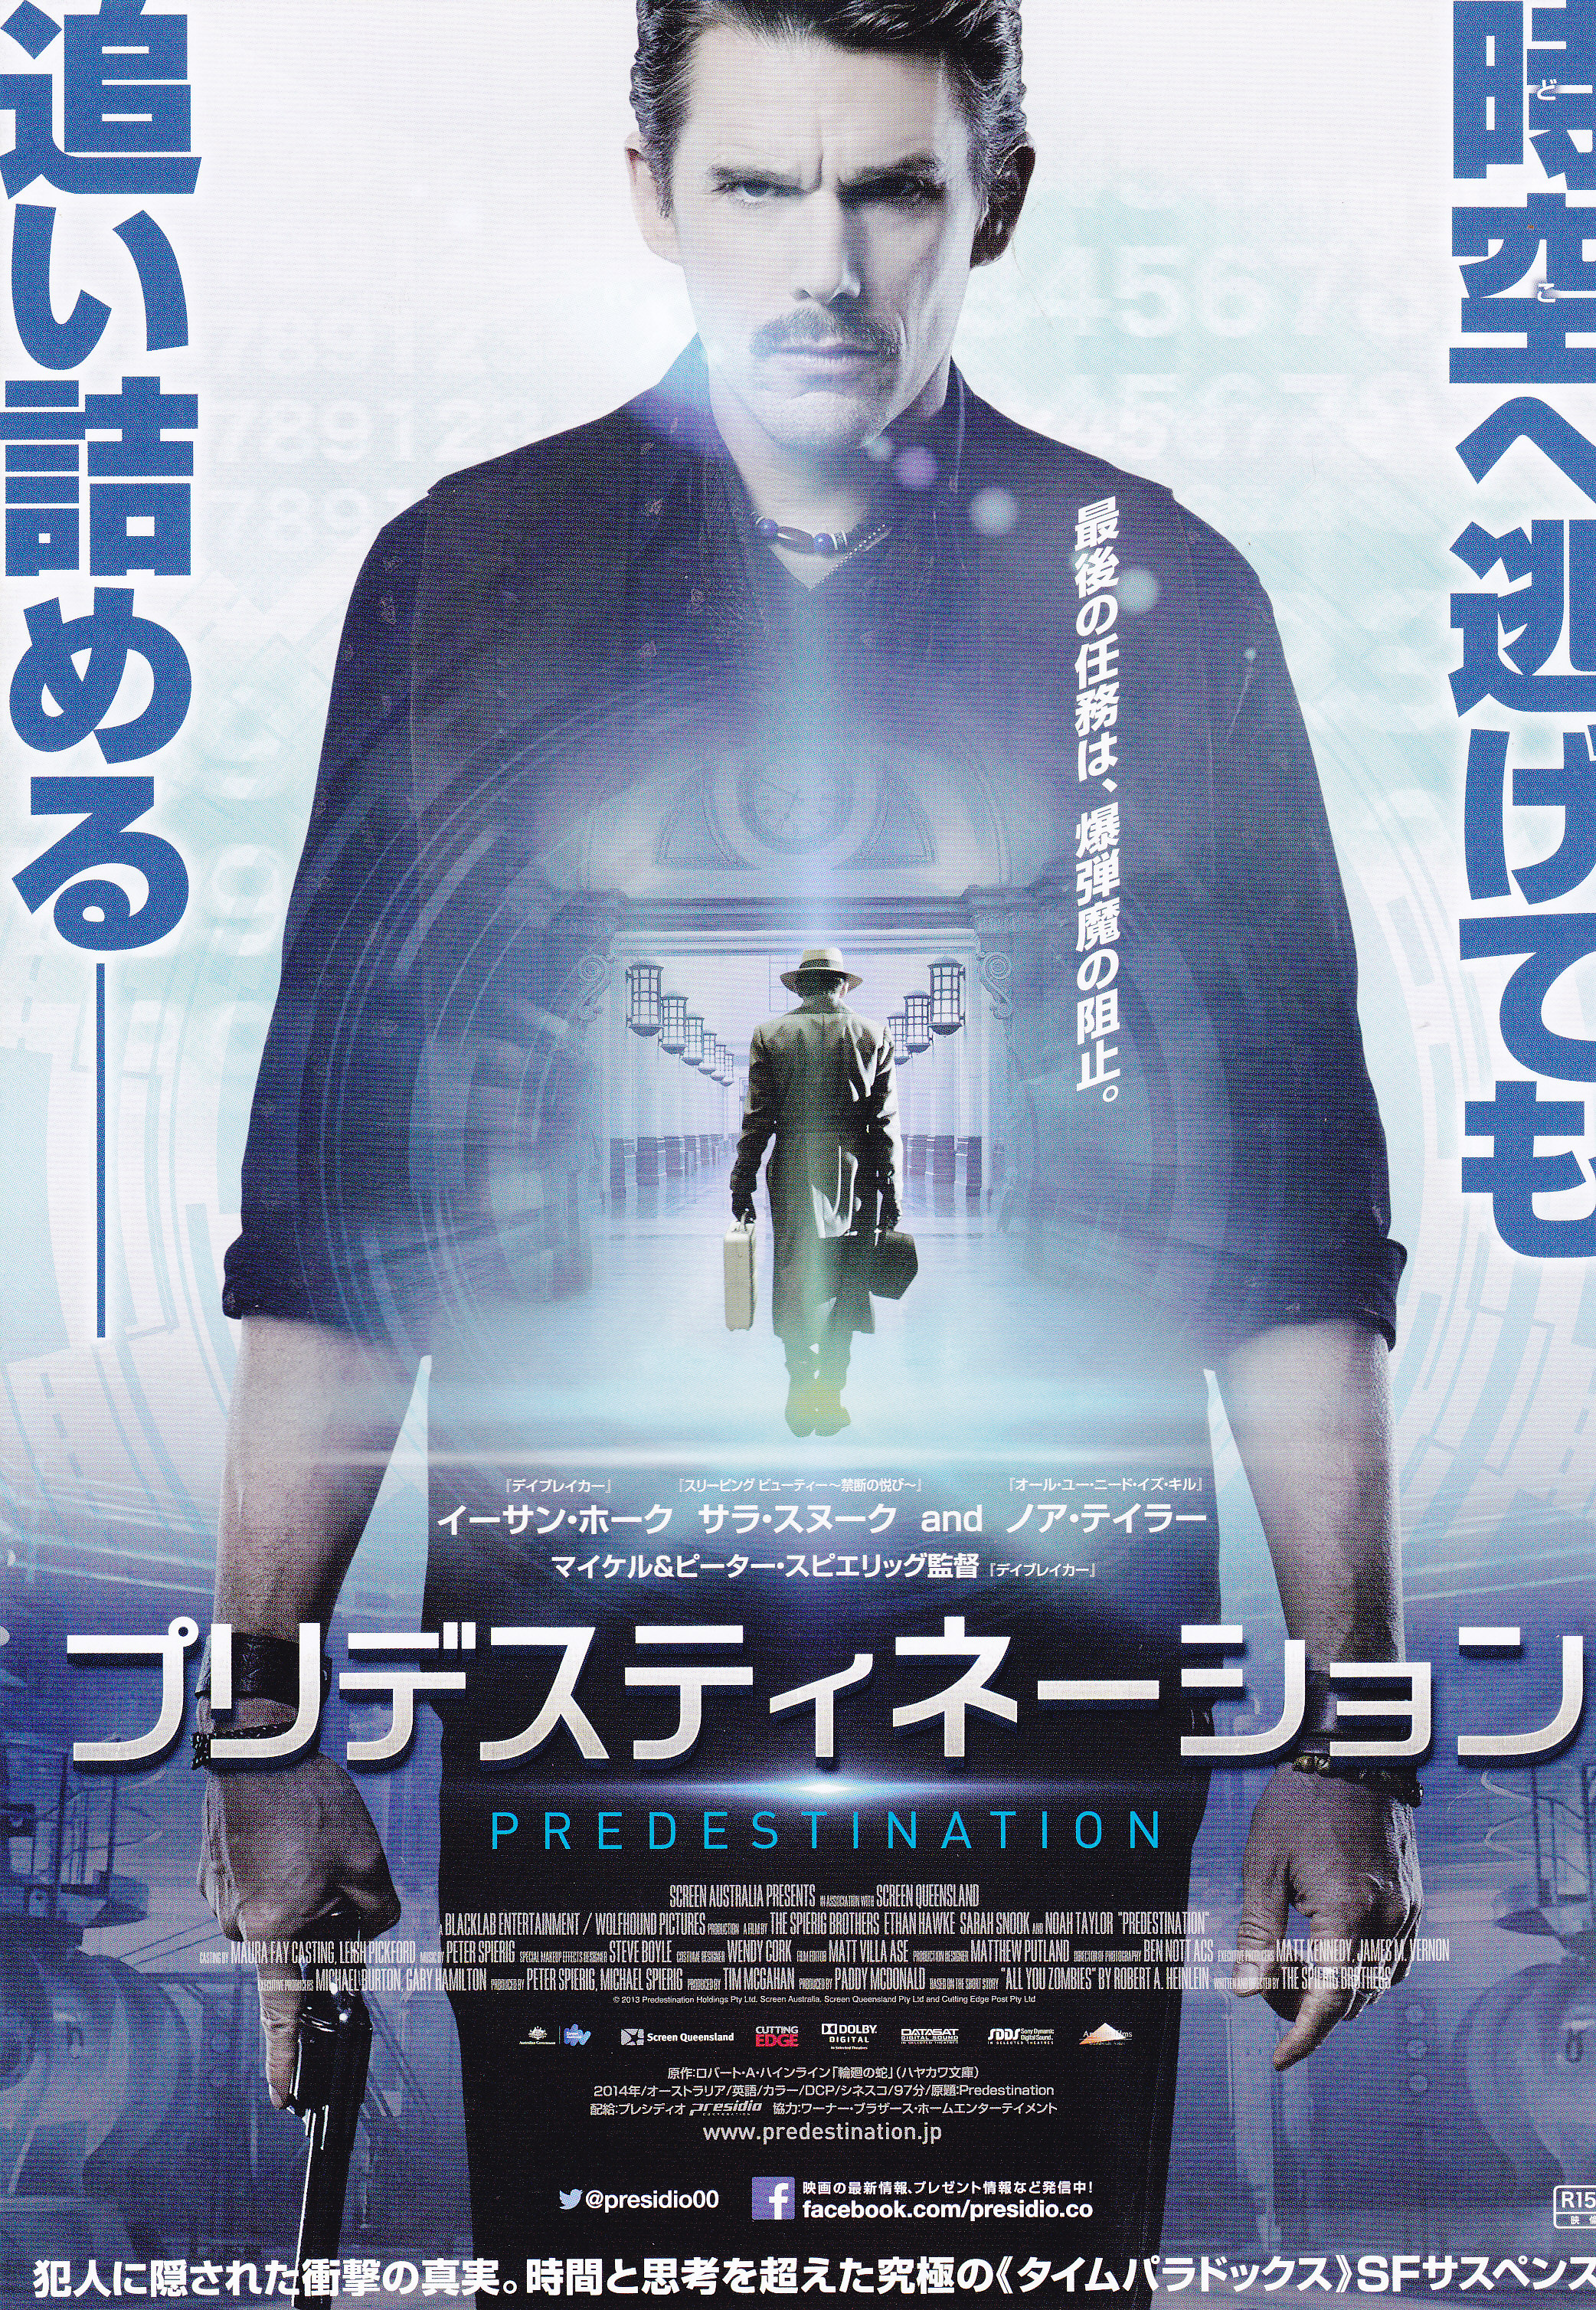 Predestination 14 Japanese Ad Flyer Poster Steemit